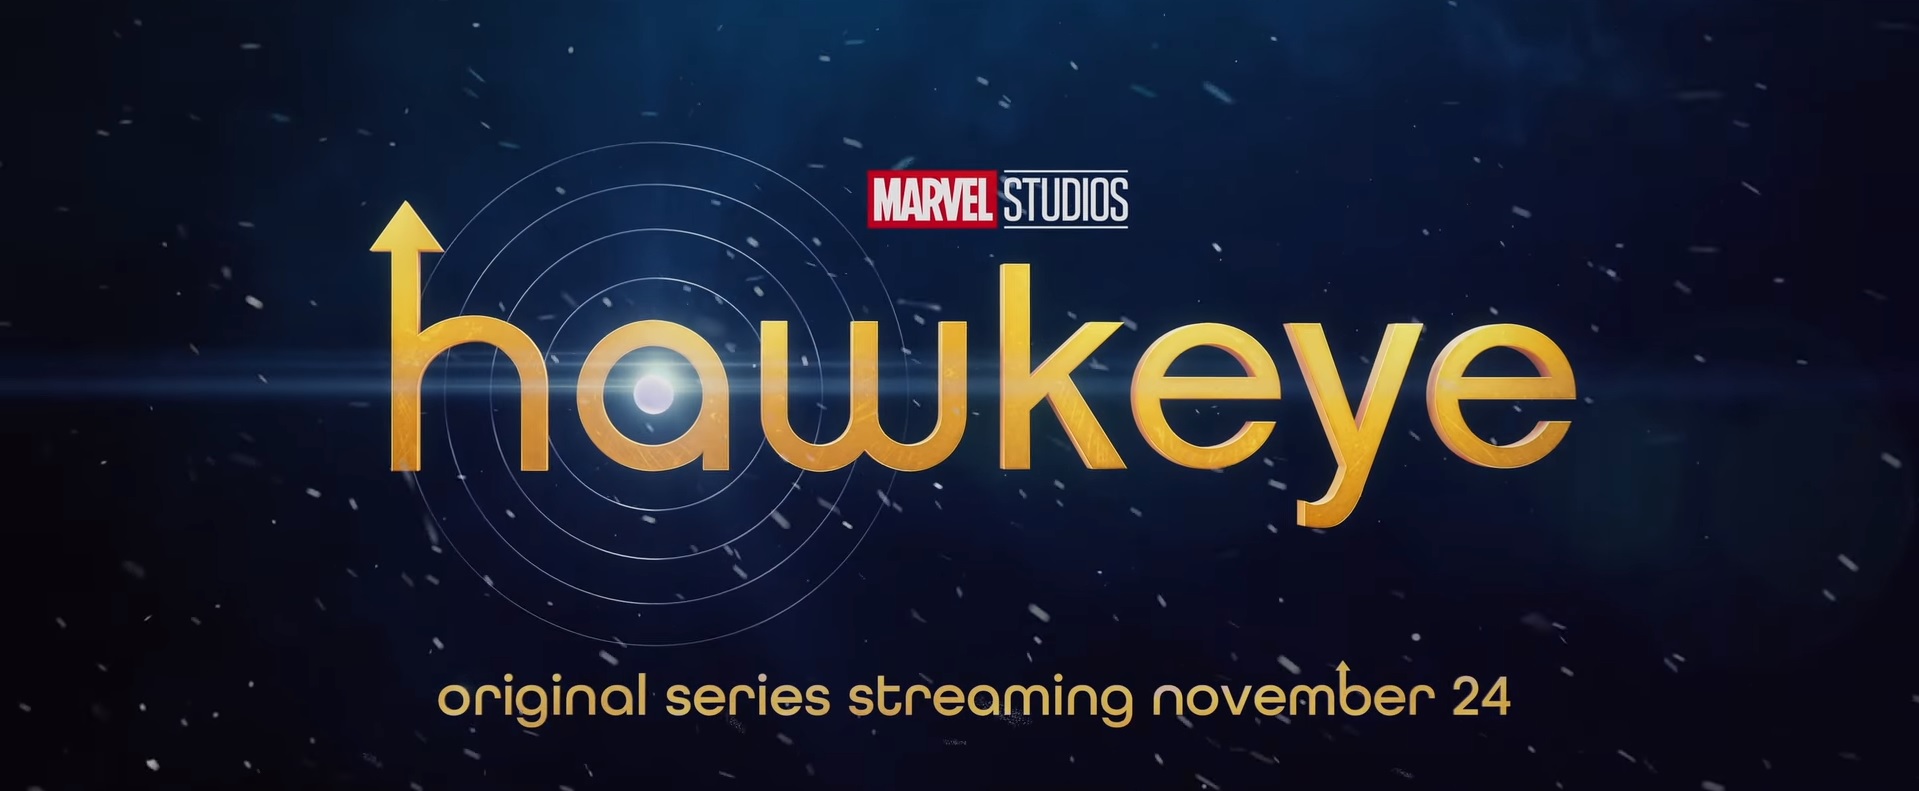 Το πρώτο trailer της σειράς Hawkeye μας παρουσιάζει τον διάδοχο του Clint Barton